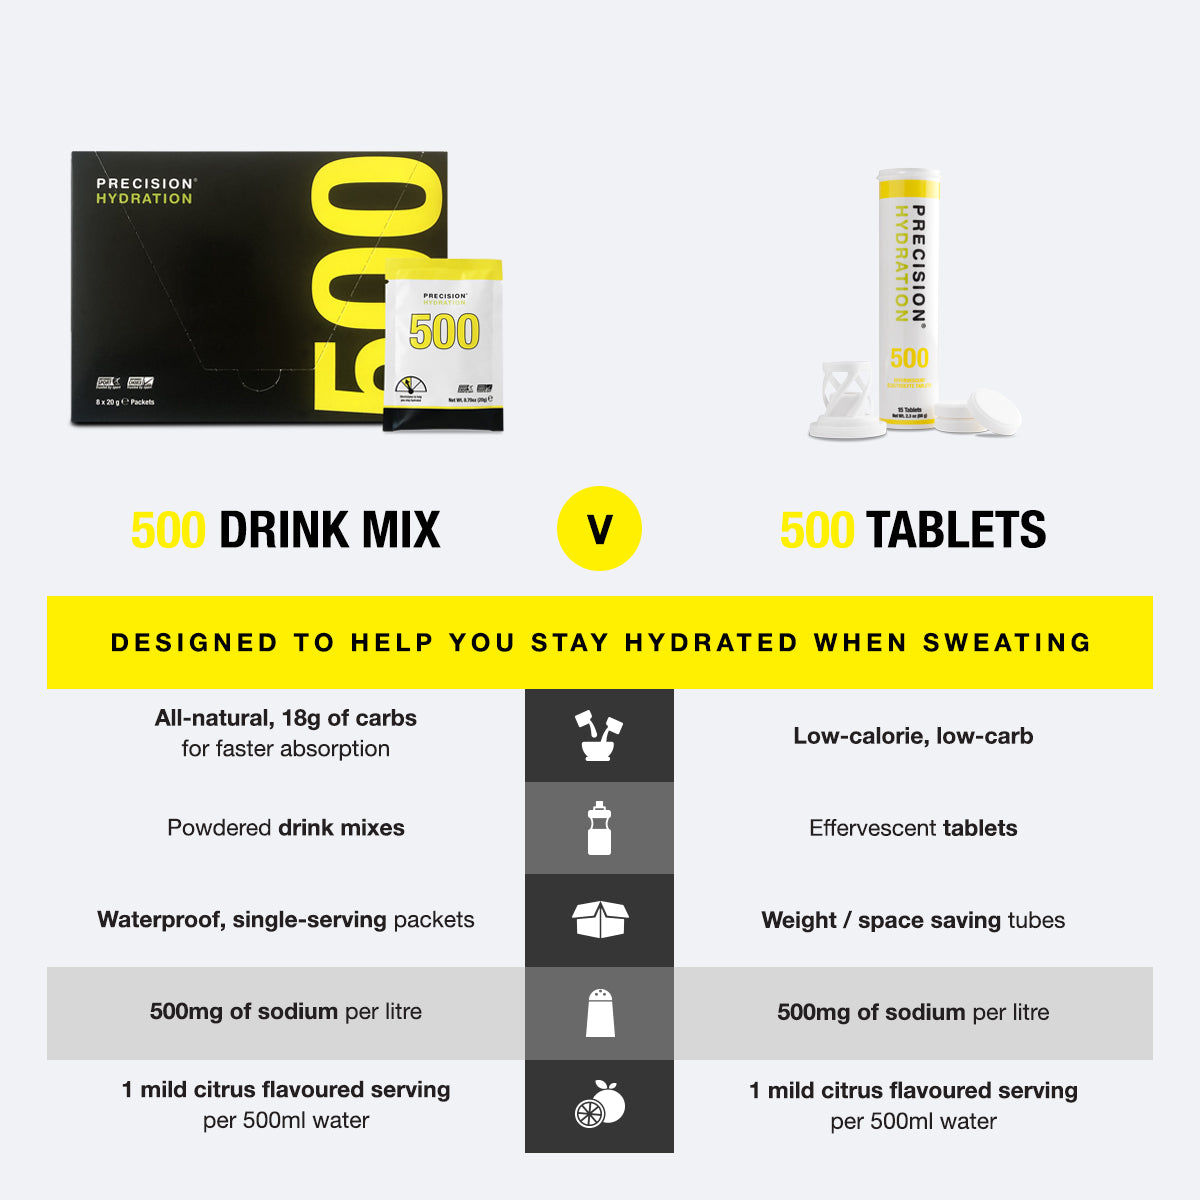 PH 500 low-calorie tablets